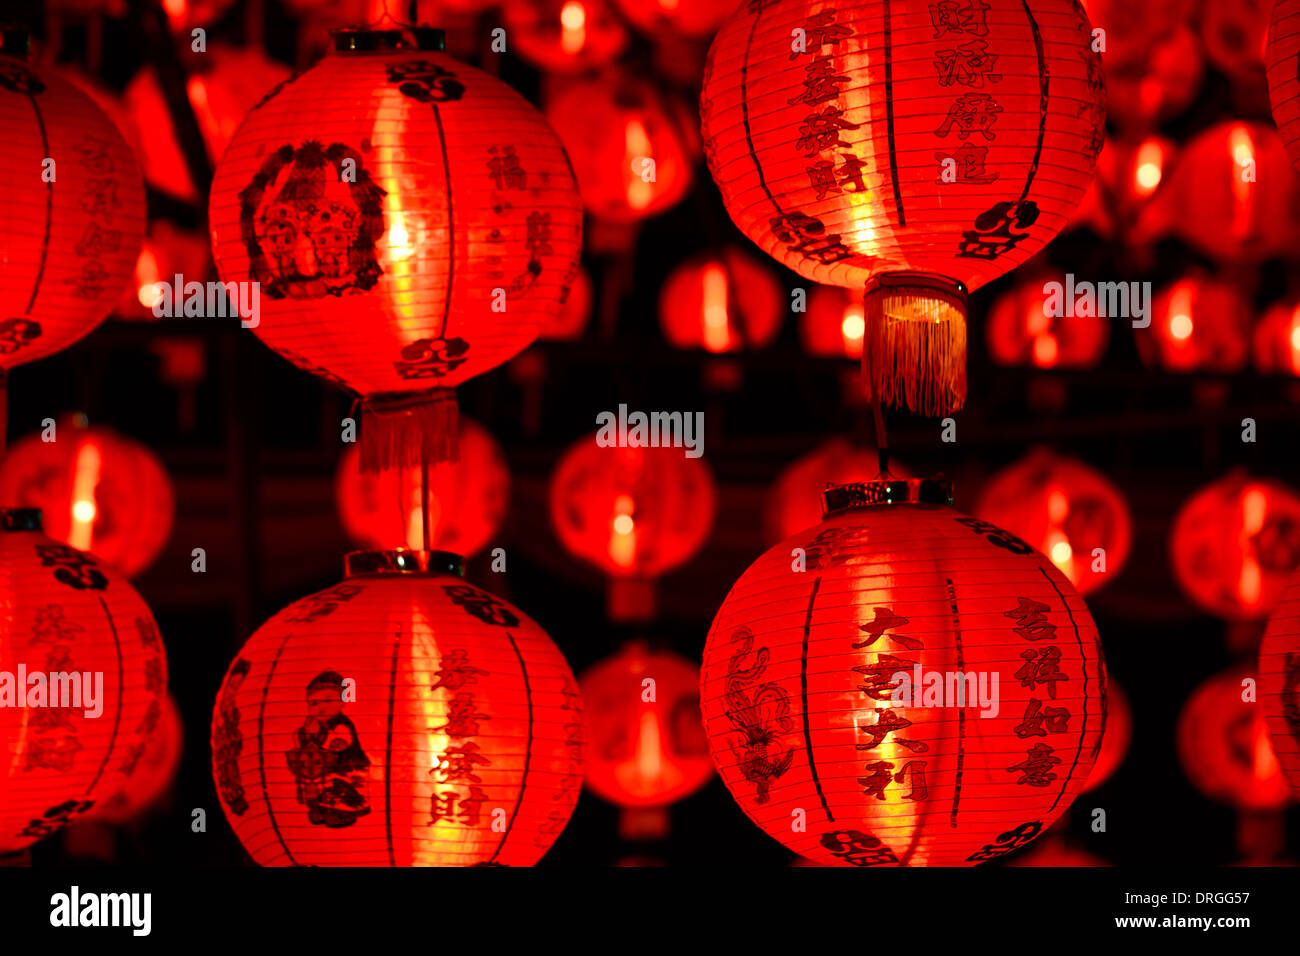 Lanternes chinoises pour le nouvel an chinois dans la nuit Banque D'Images